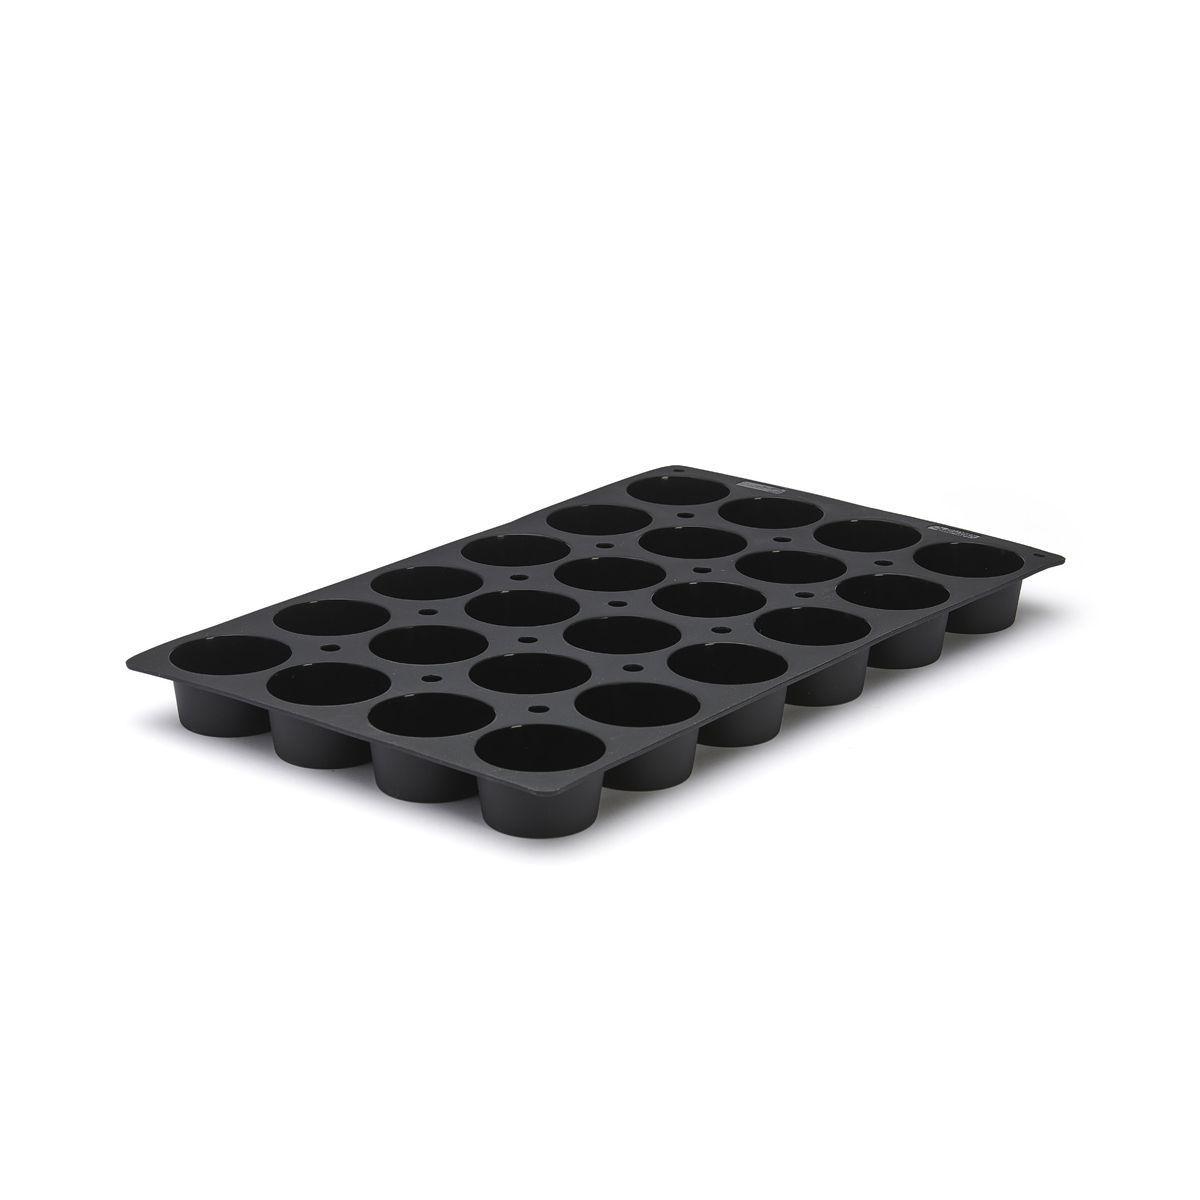 Tray muffins MOUL FLEX PRO, silicone, silicone, tray gastro gn 1/1